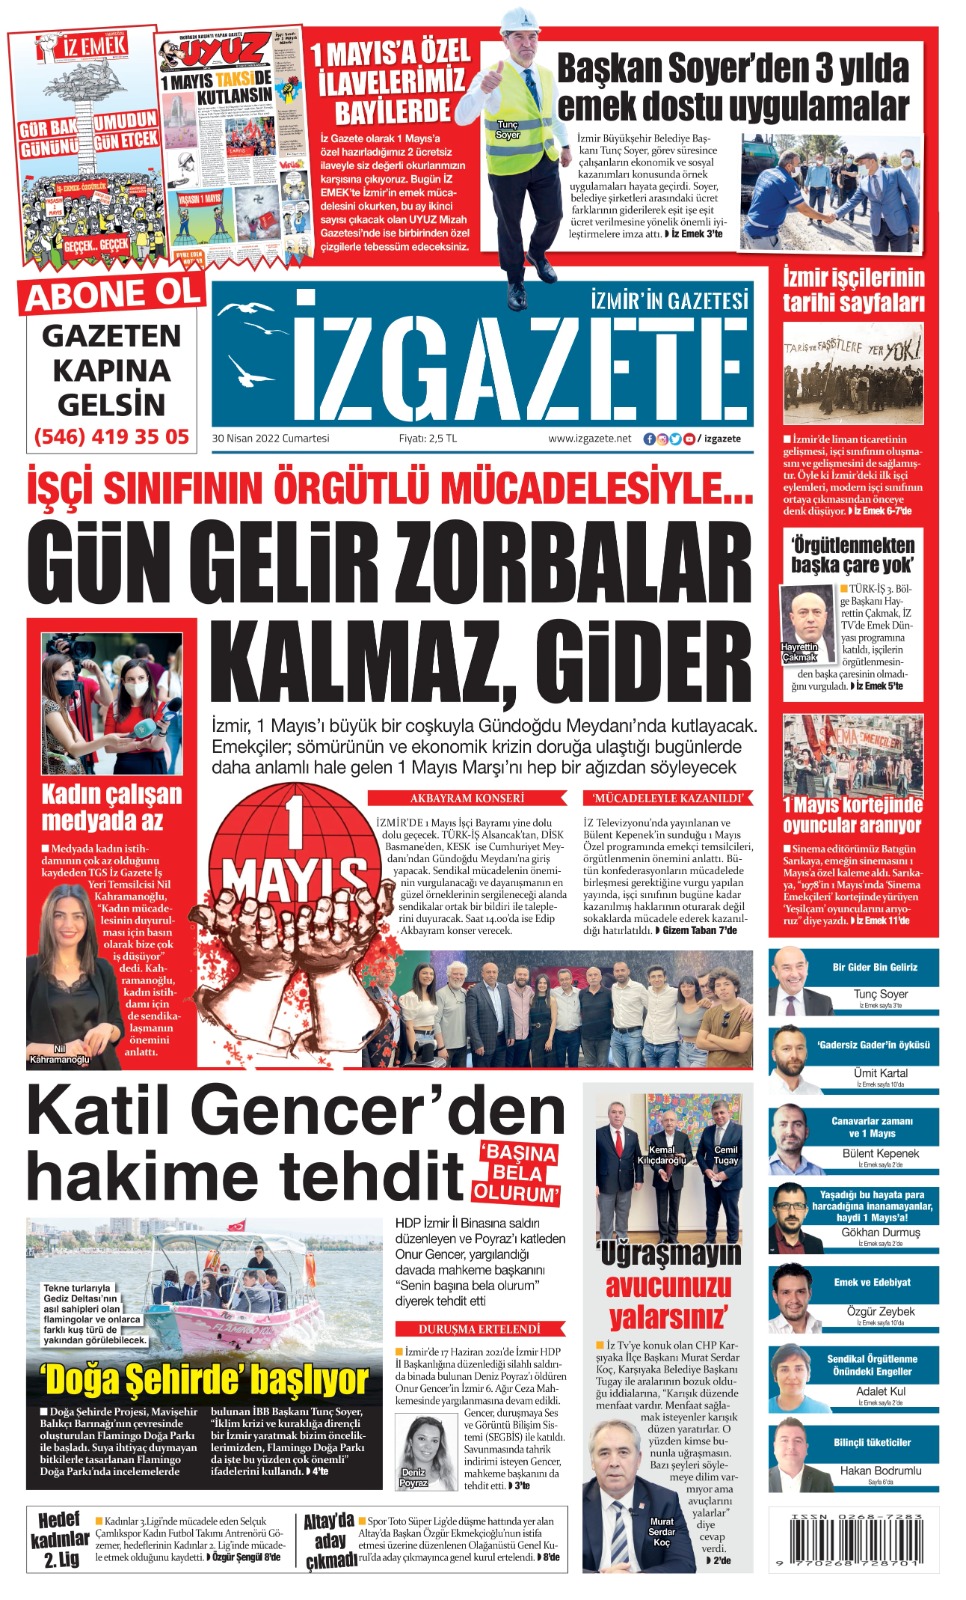 İz Gazete - İzmir'in Gazetesi - 30.04.2022 Manşeti